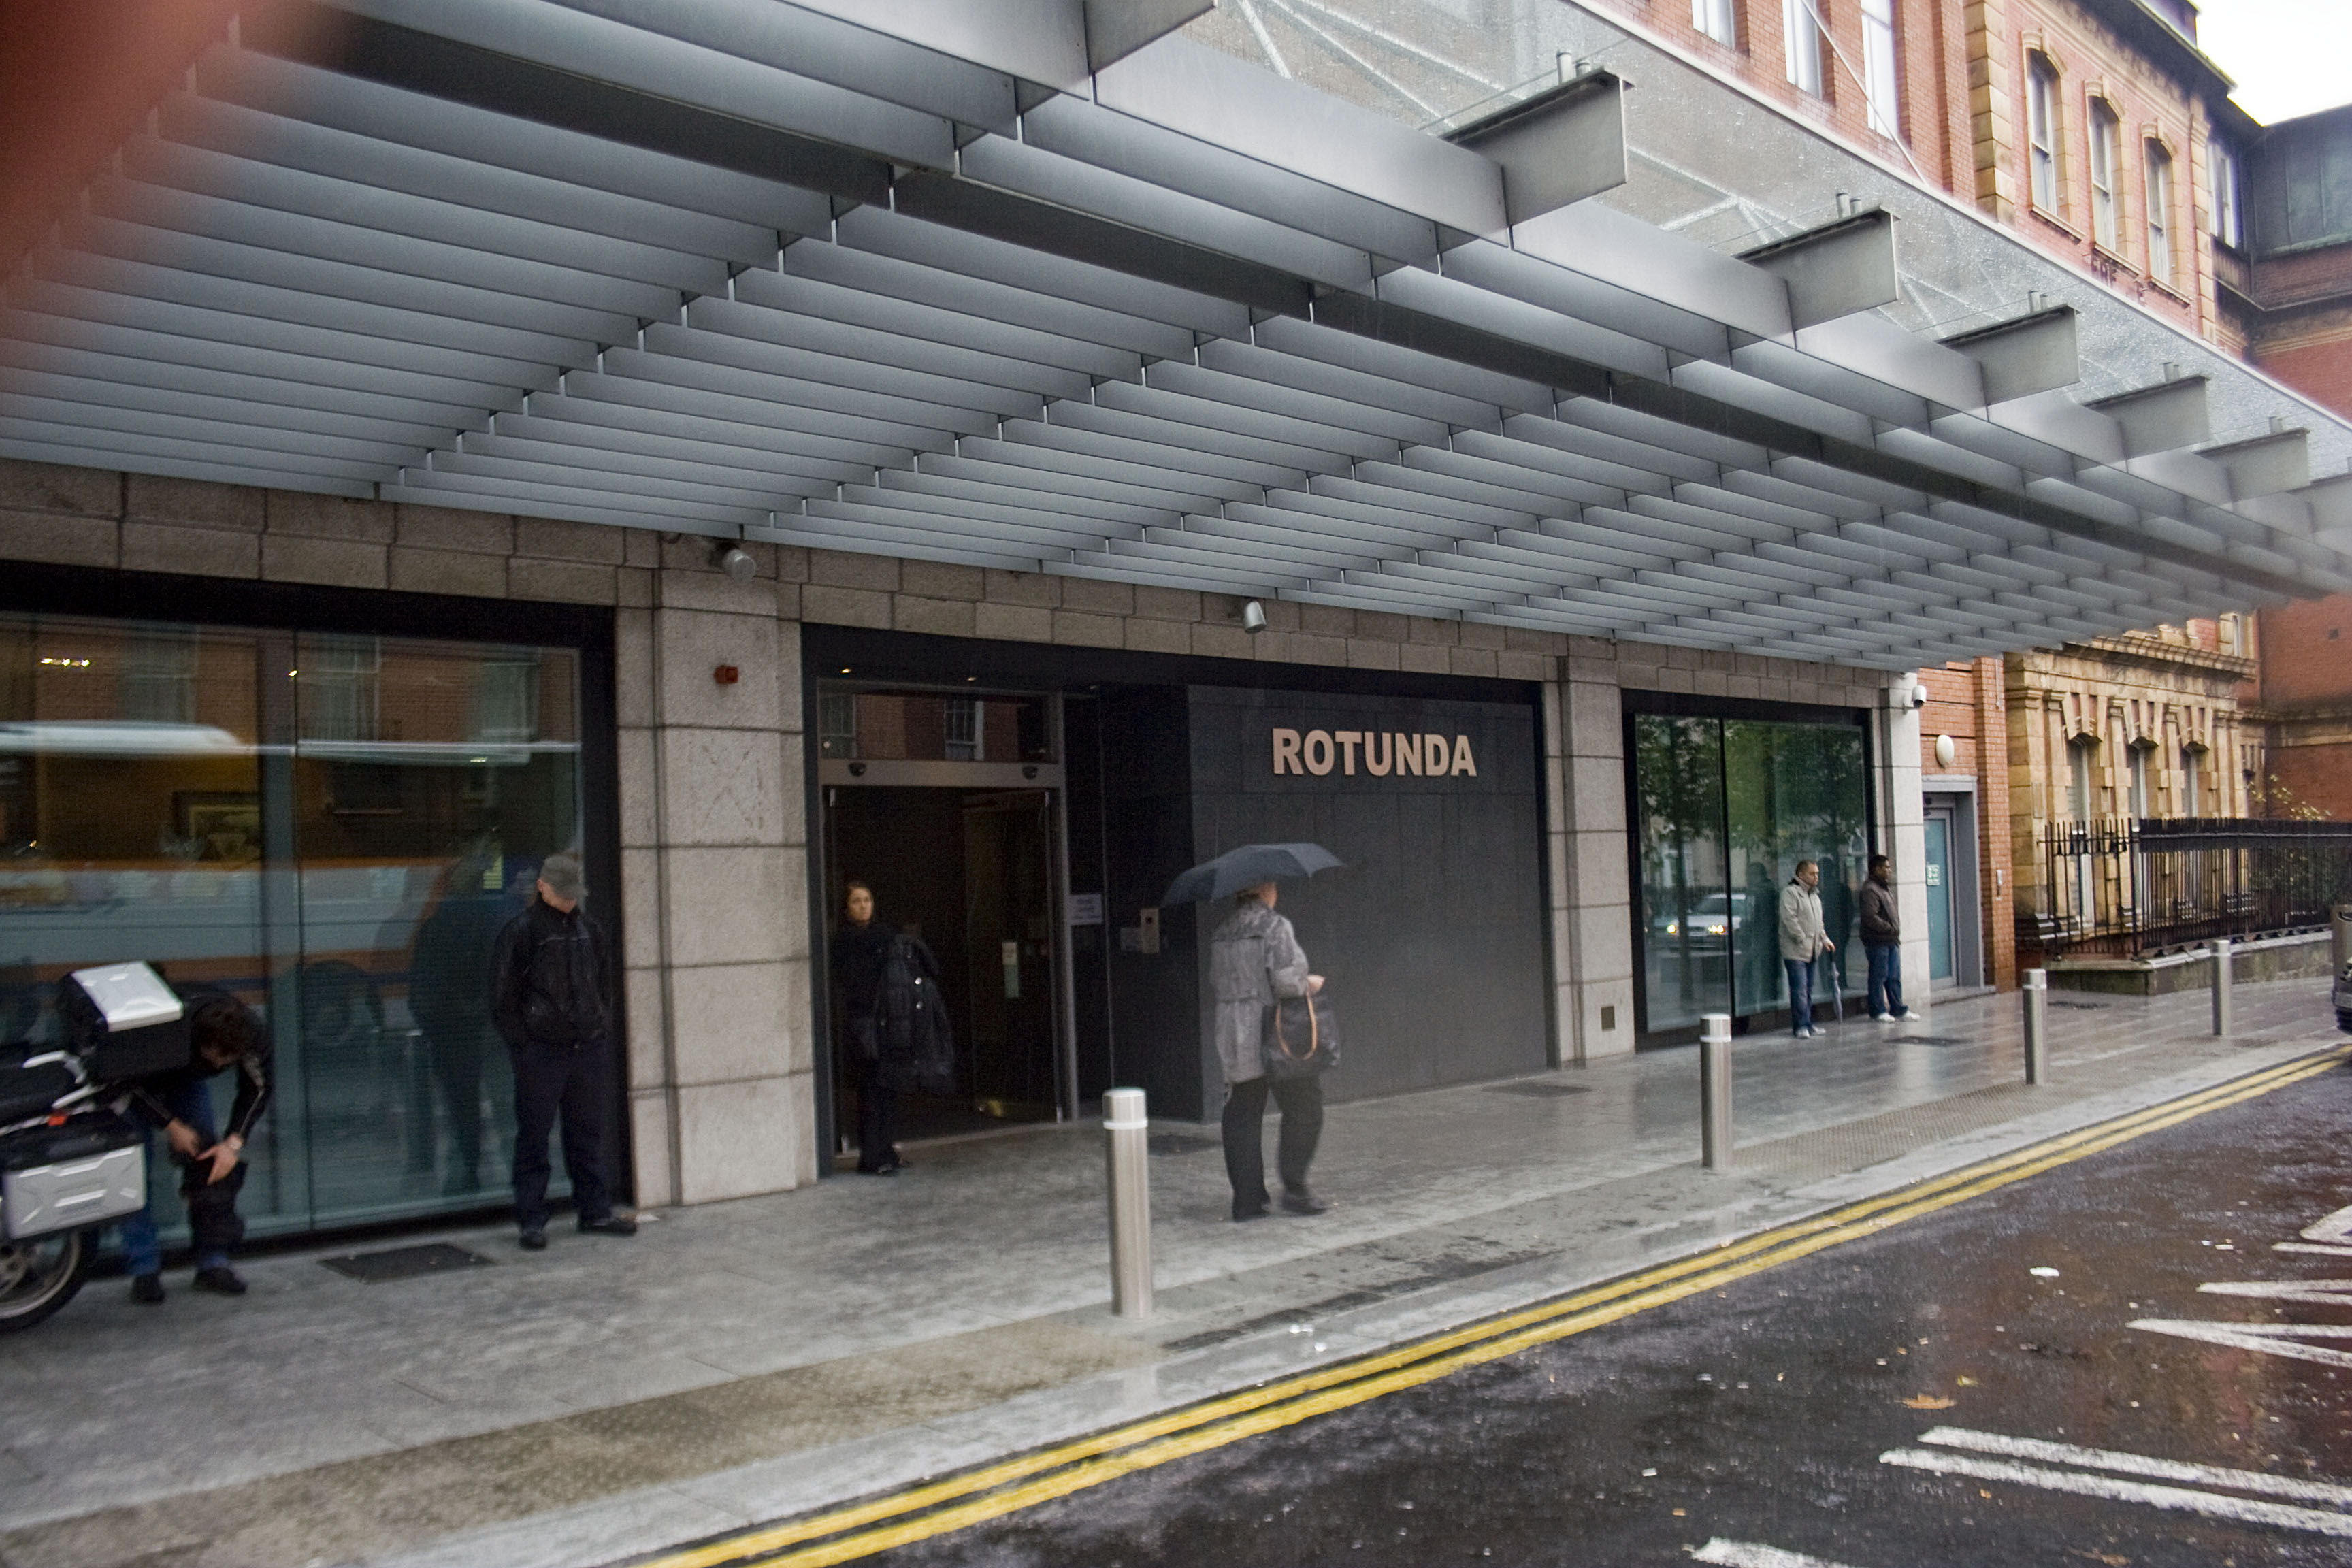 Rotunda hospital, ospedale natale di Paul Hewson in arte Bonovox in pieno centro, nella zona della famosa O'Connell street, la via principale di Dublino